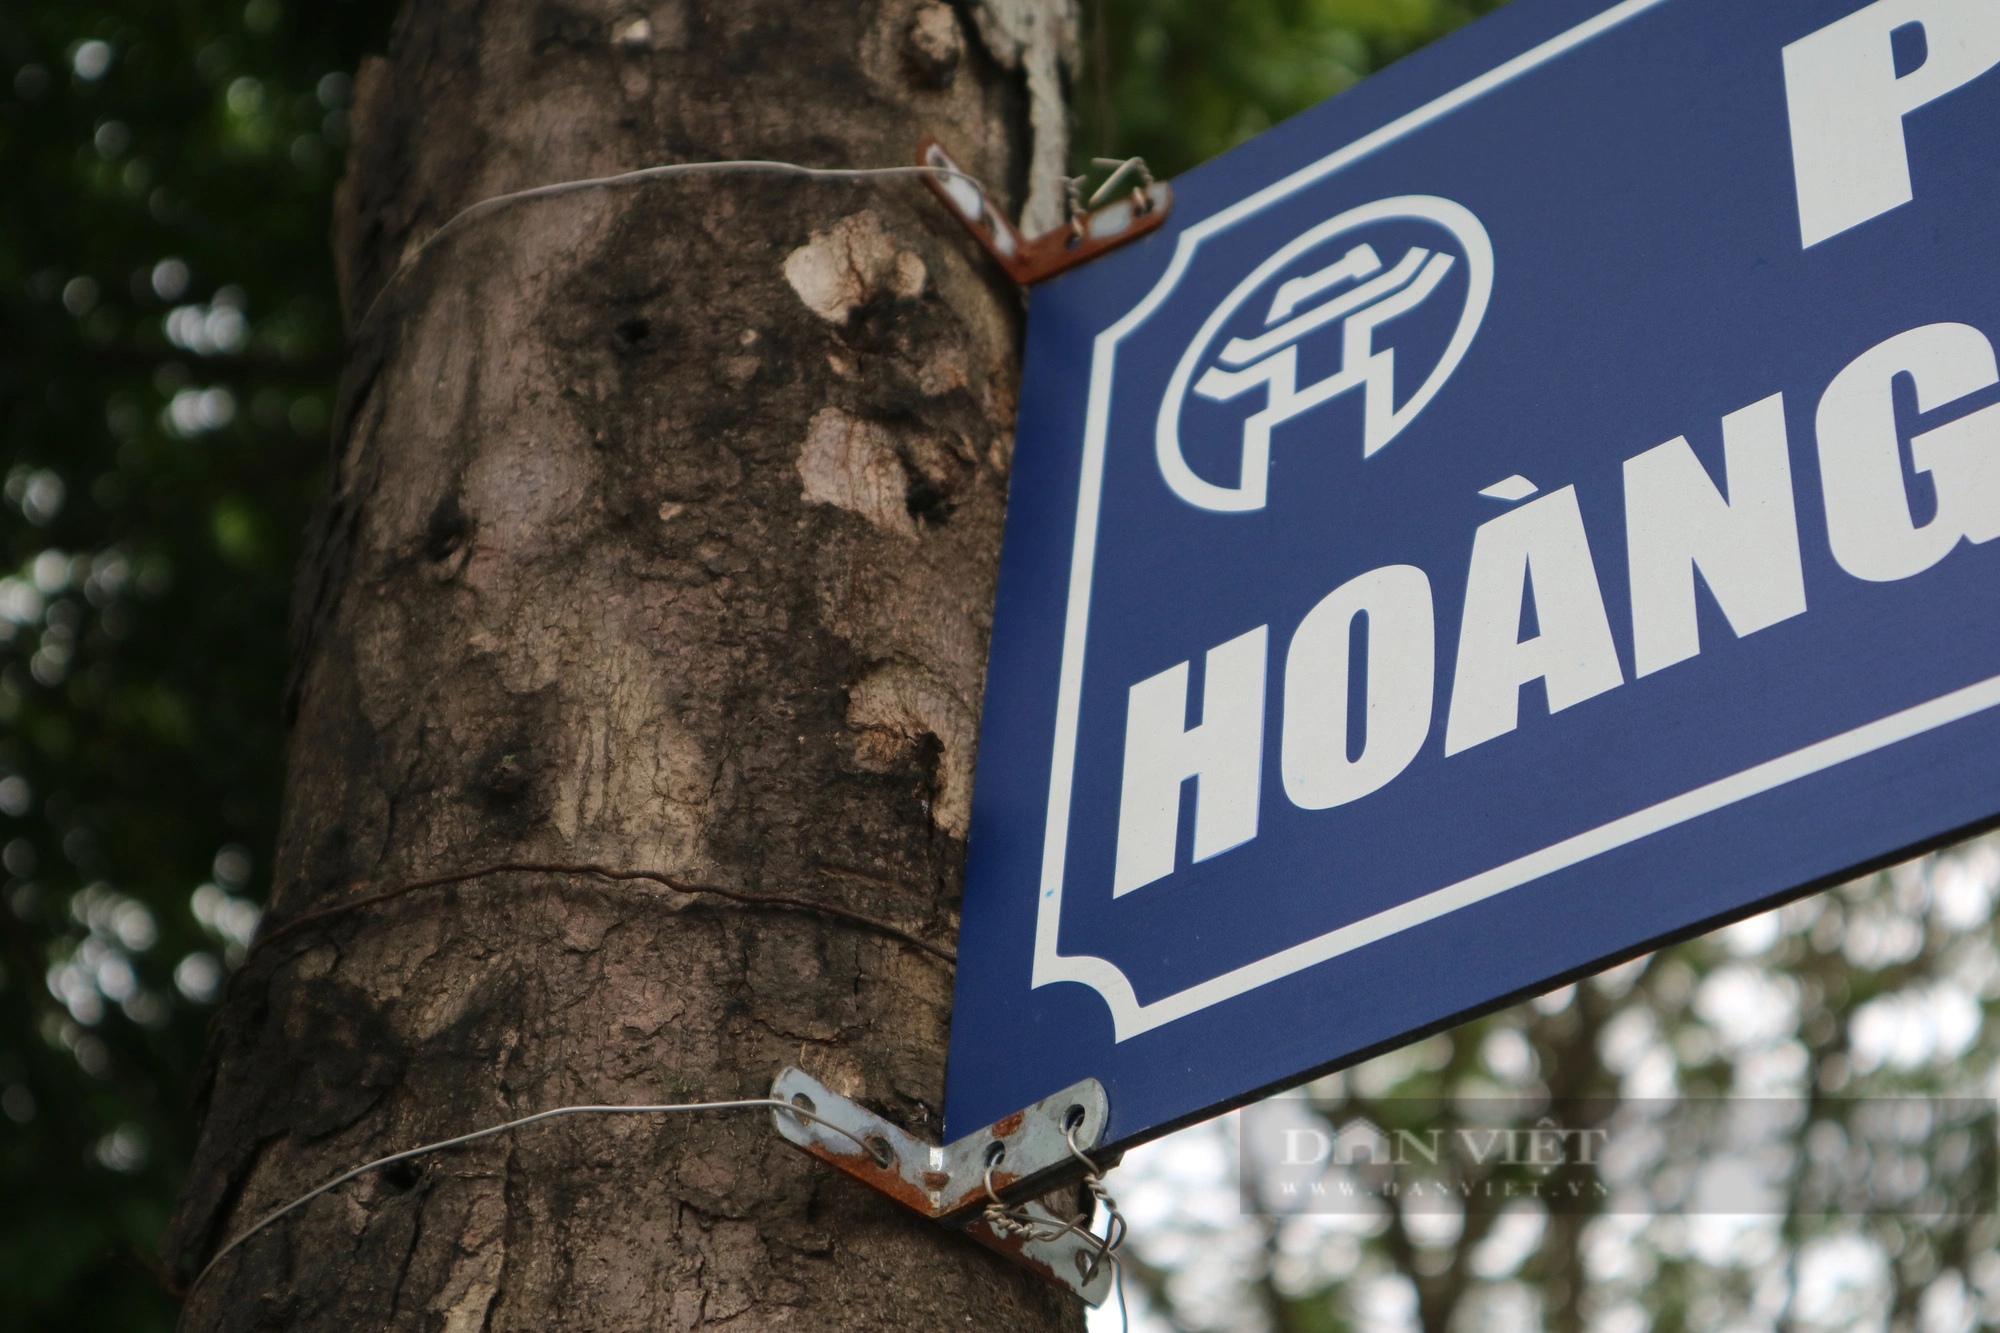 Chuyện lạ "có một không hai" ở Hà Nội: Biển báo tên đường được treo trên cây- Ảnh 6.